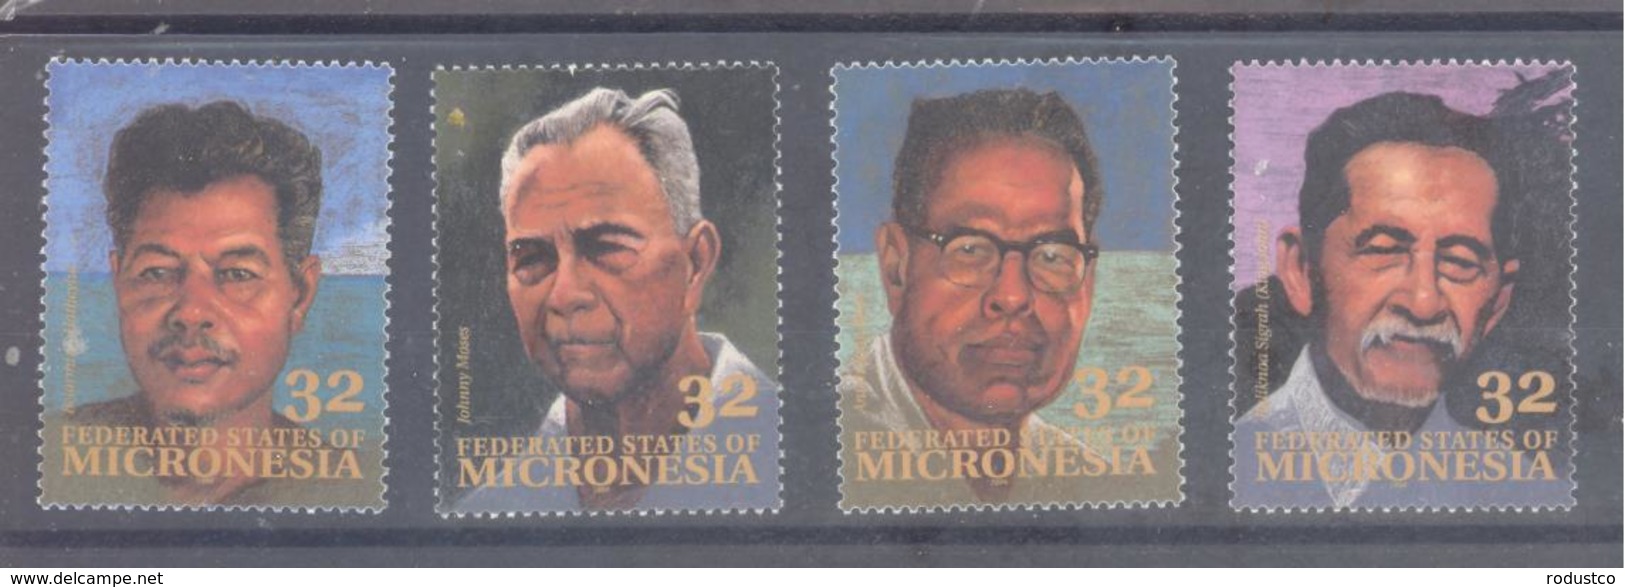 Micronesia   Michel #  397 - 400   Persönlichkeiten - Mikronesien